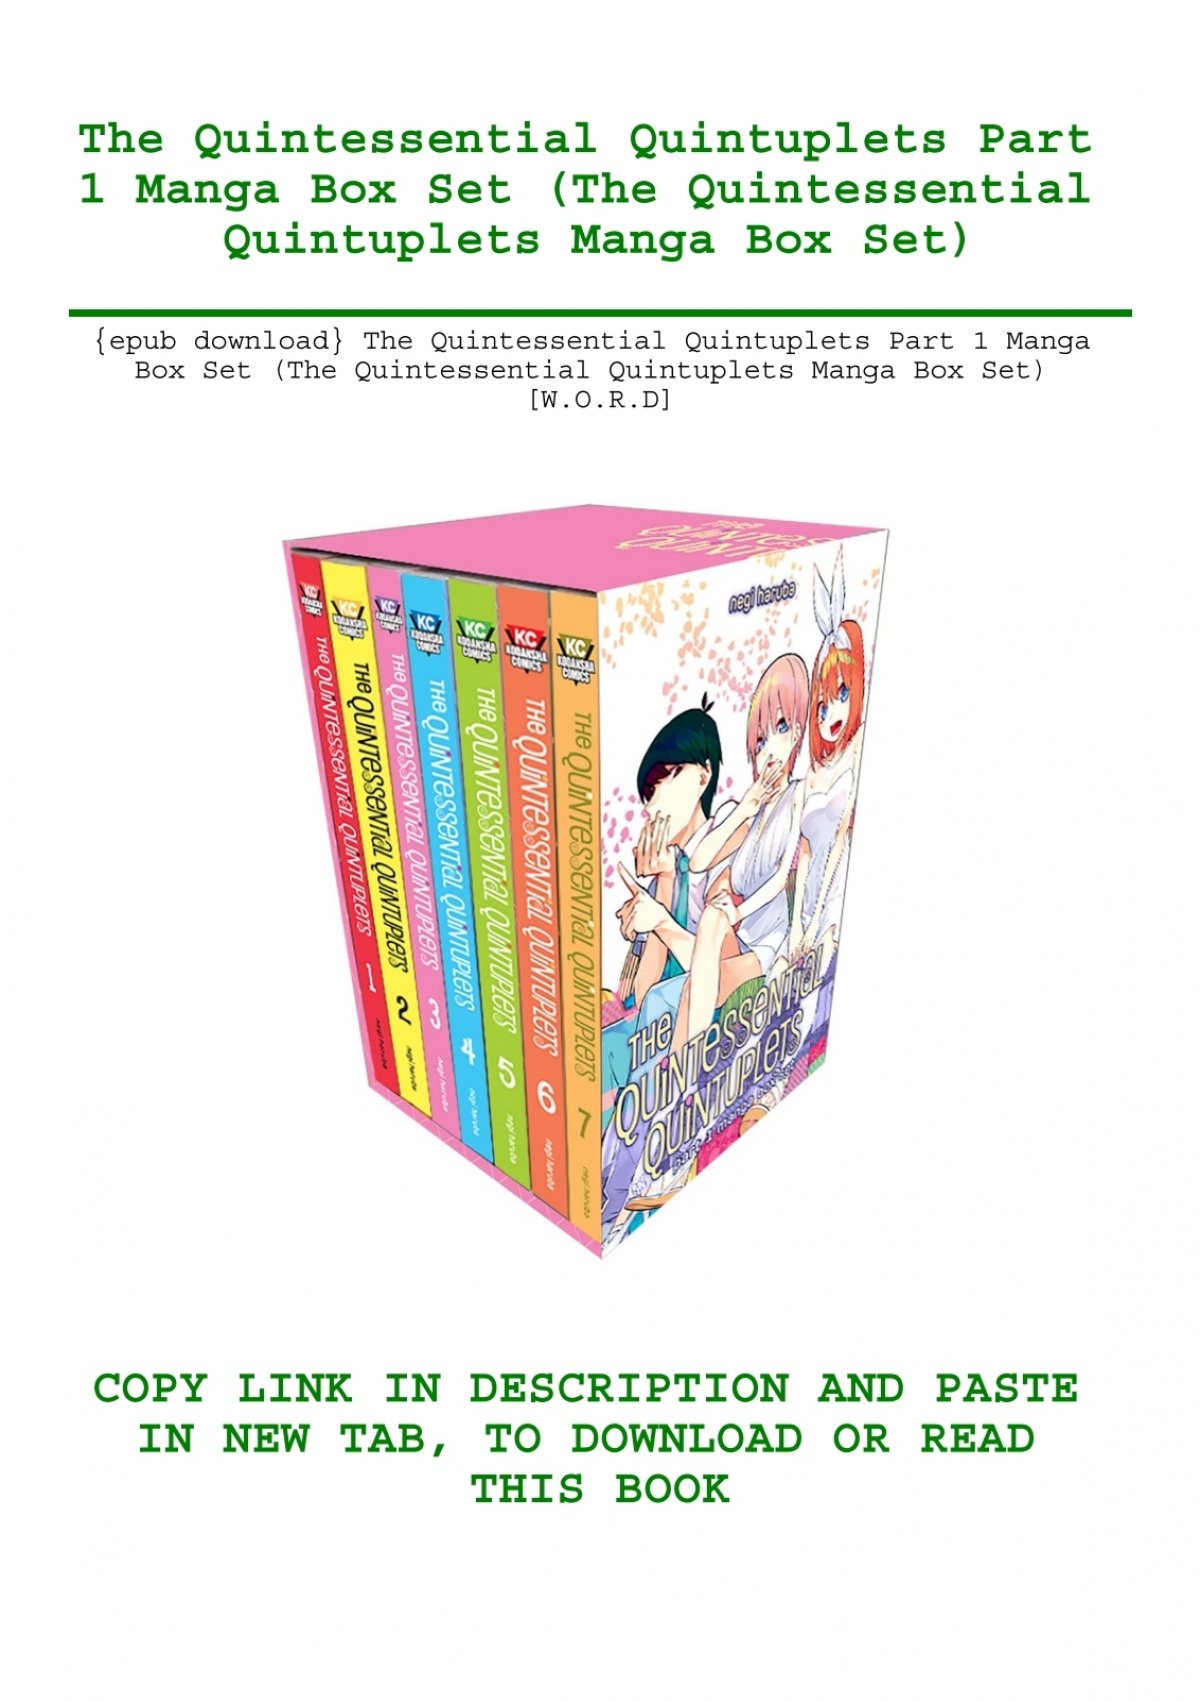 5-toubun no Hanayome (The Quintessential Quintuplets) - Completo -  MangAnime - Download baixar Mangás e HQs em Kindle .mobi e outros formatos  .pdf mangás para kindle